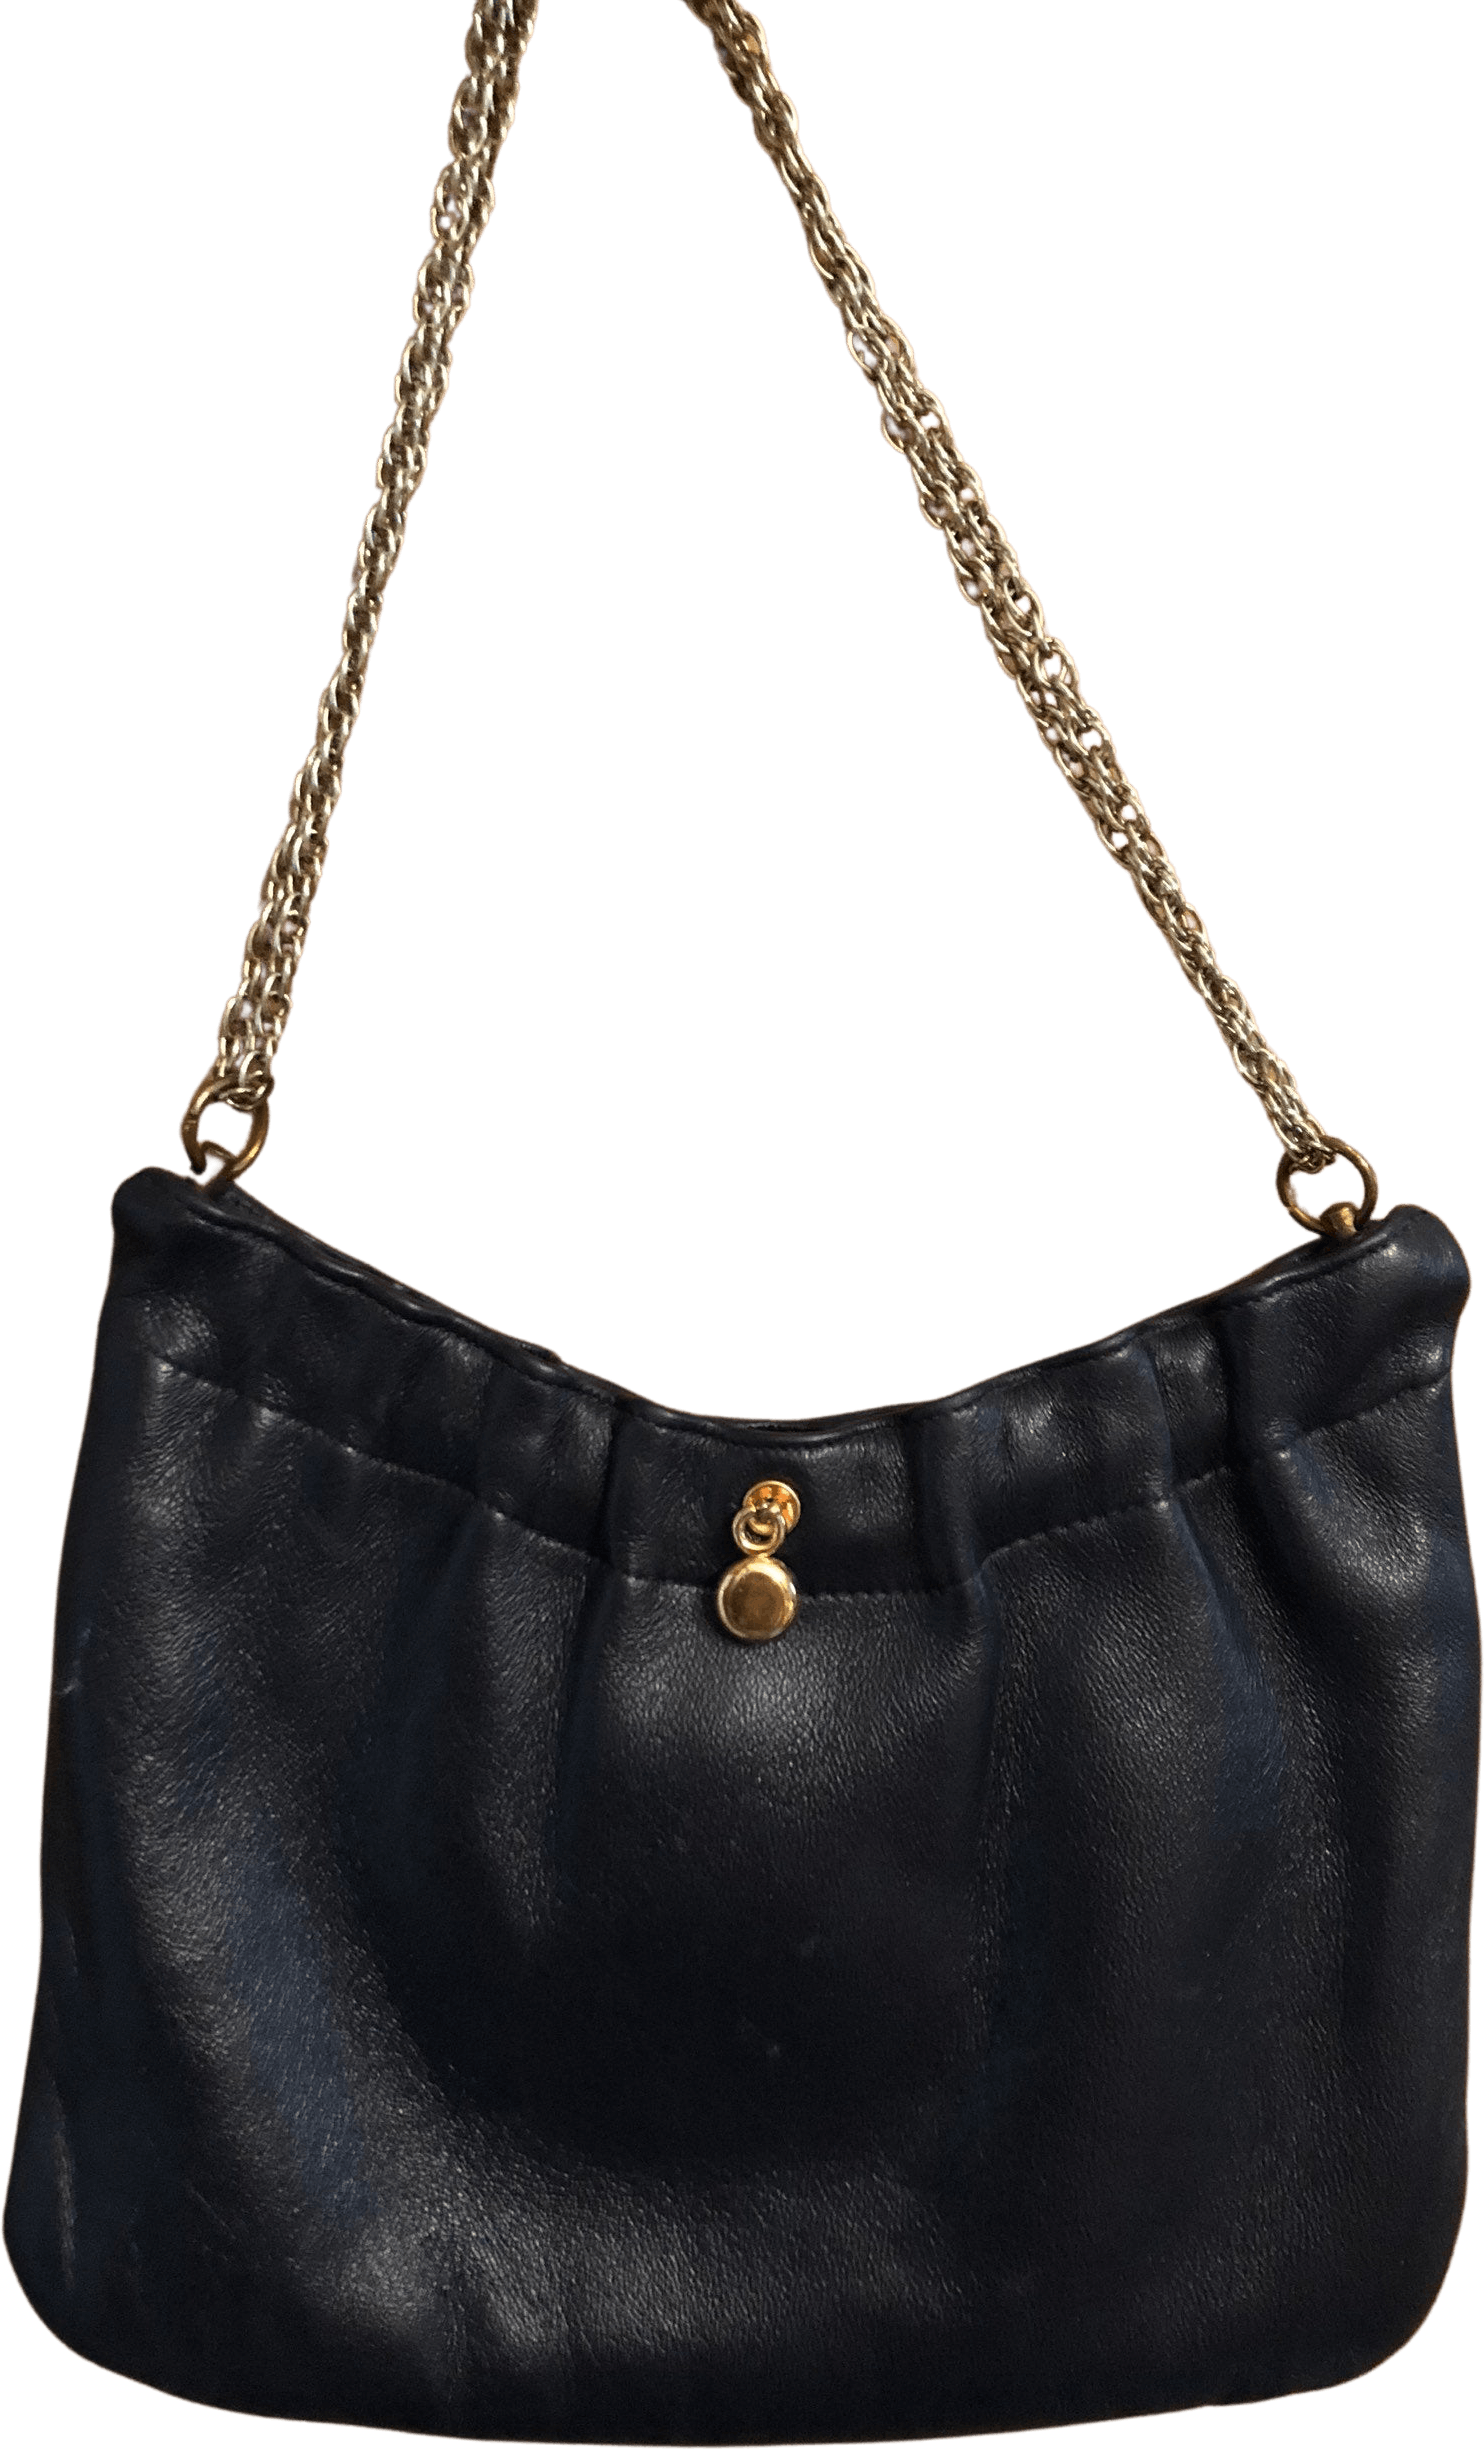 Black Leather Bag Background PNG Image